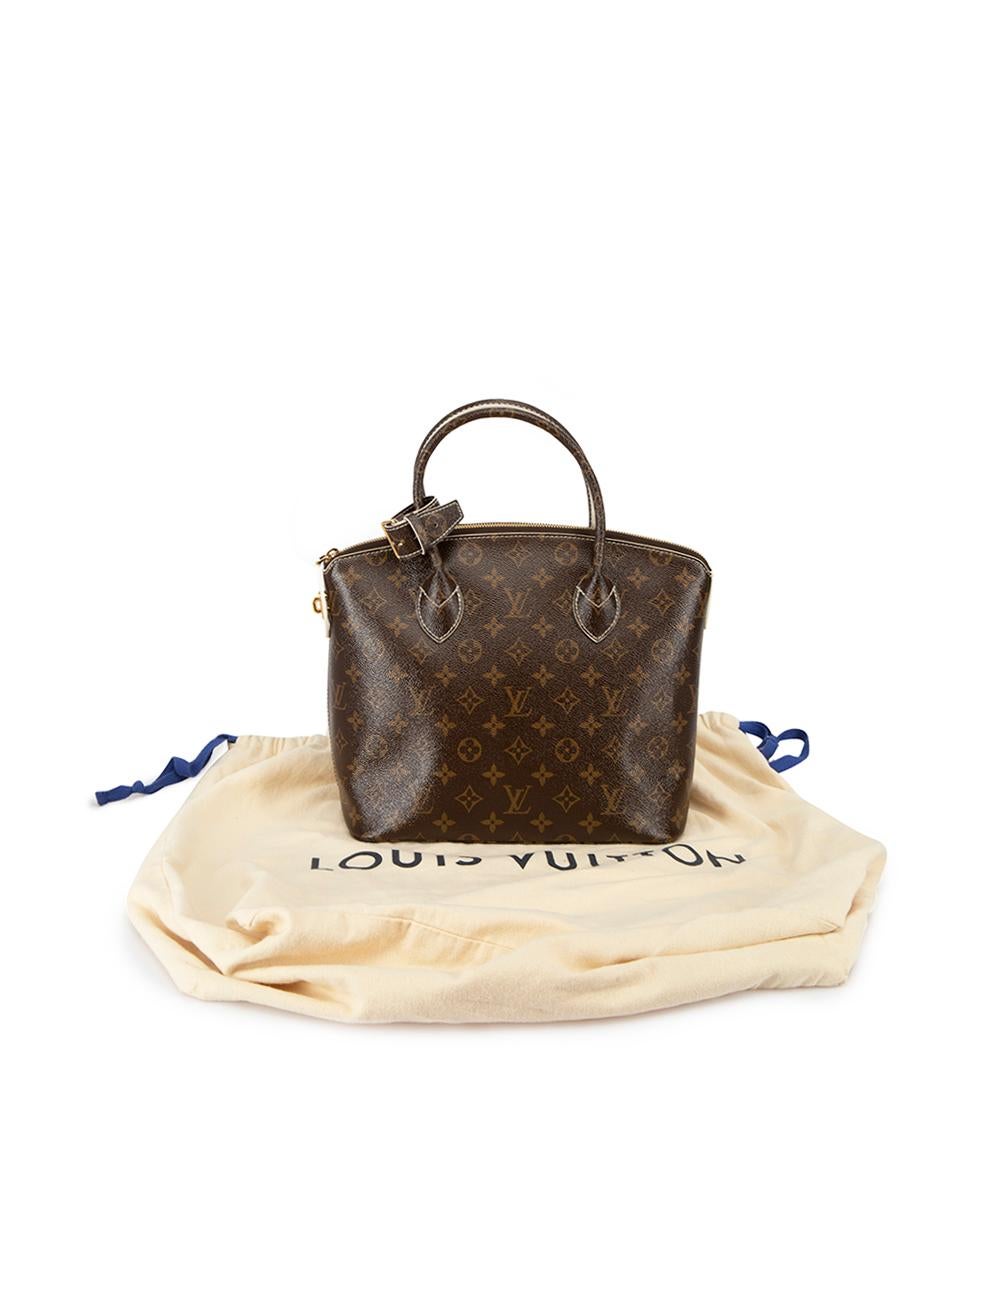 Louis Vuitton Women's 2011 Brown Leather Monogram Fetish Lockit Handbag 3